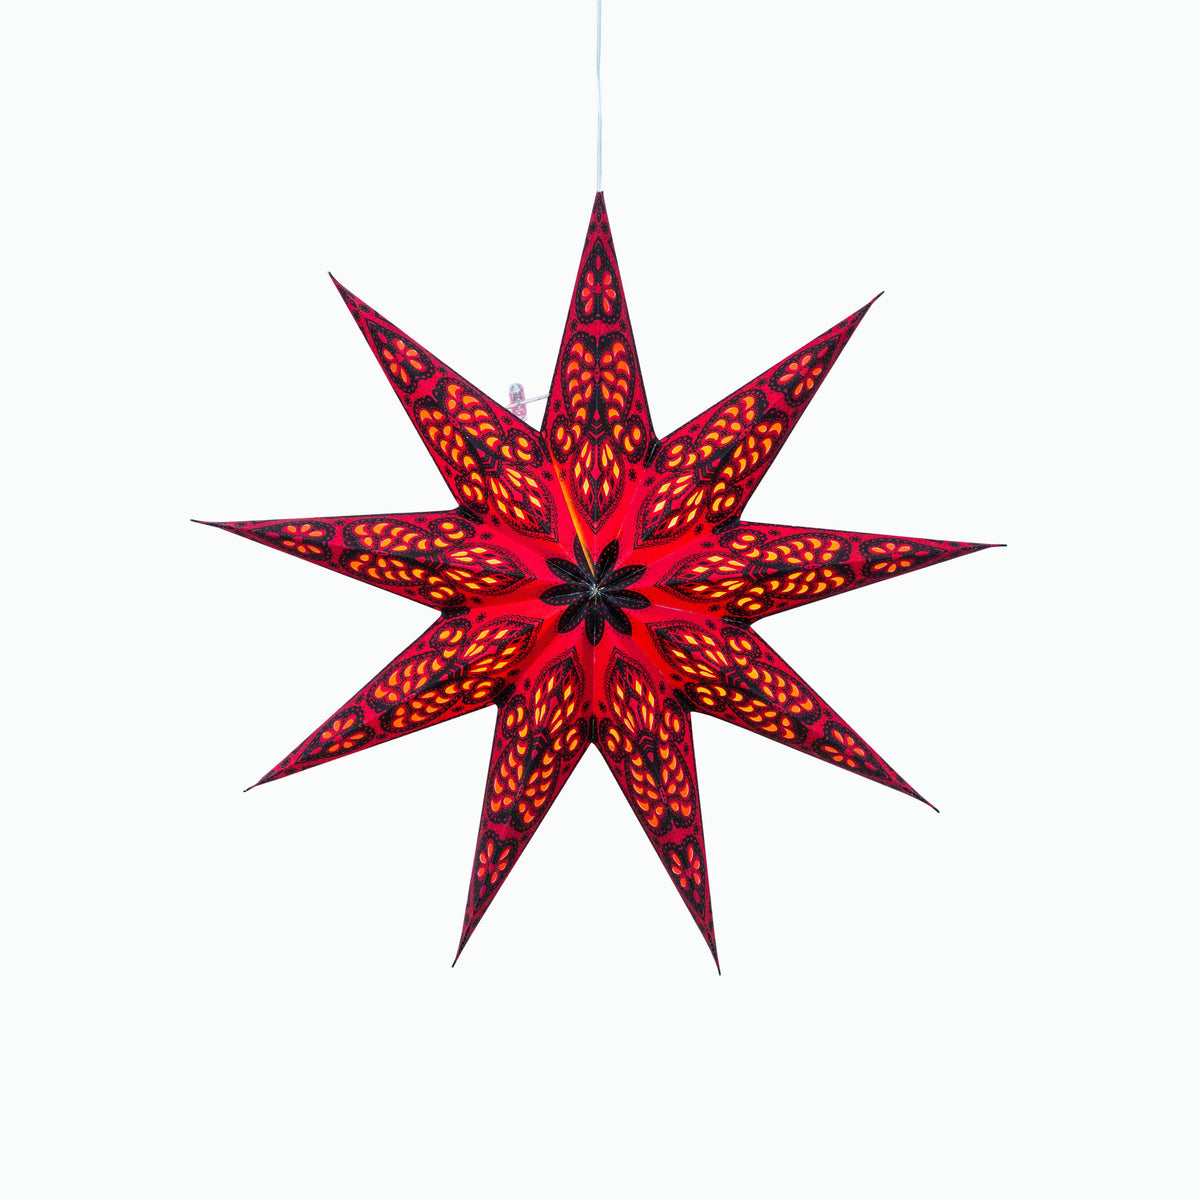 Phoenix ~ 9 Pointer, 17 inch, Red Paper Star Lantern Light